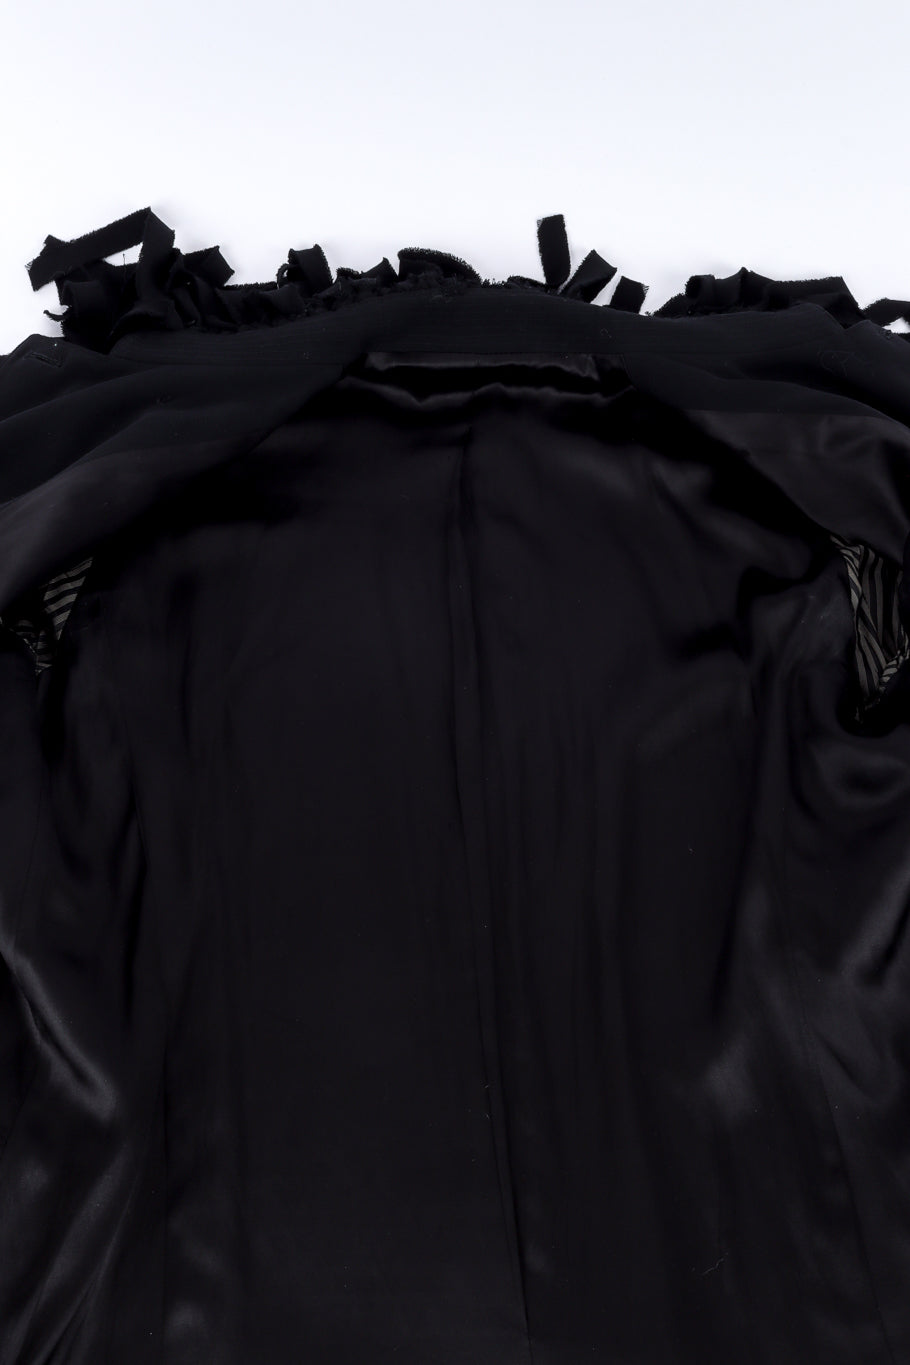 Vintage Jean Paul Gaultier Femme Car Wash Fringe Jacket view of lining @recessla